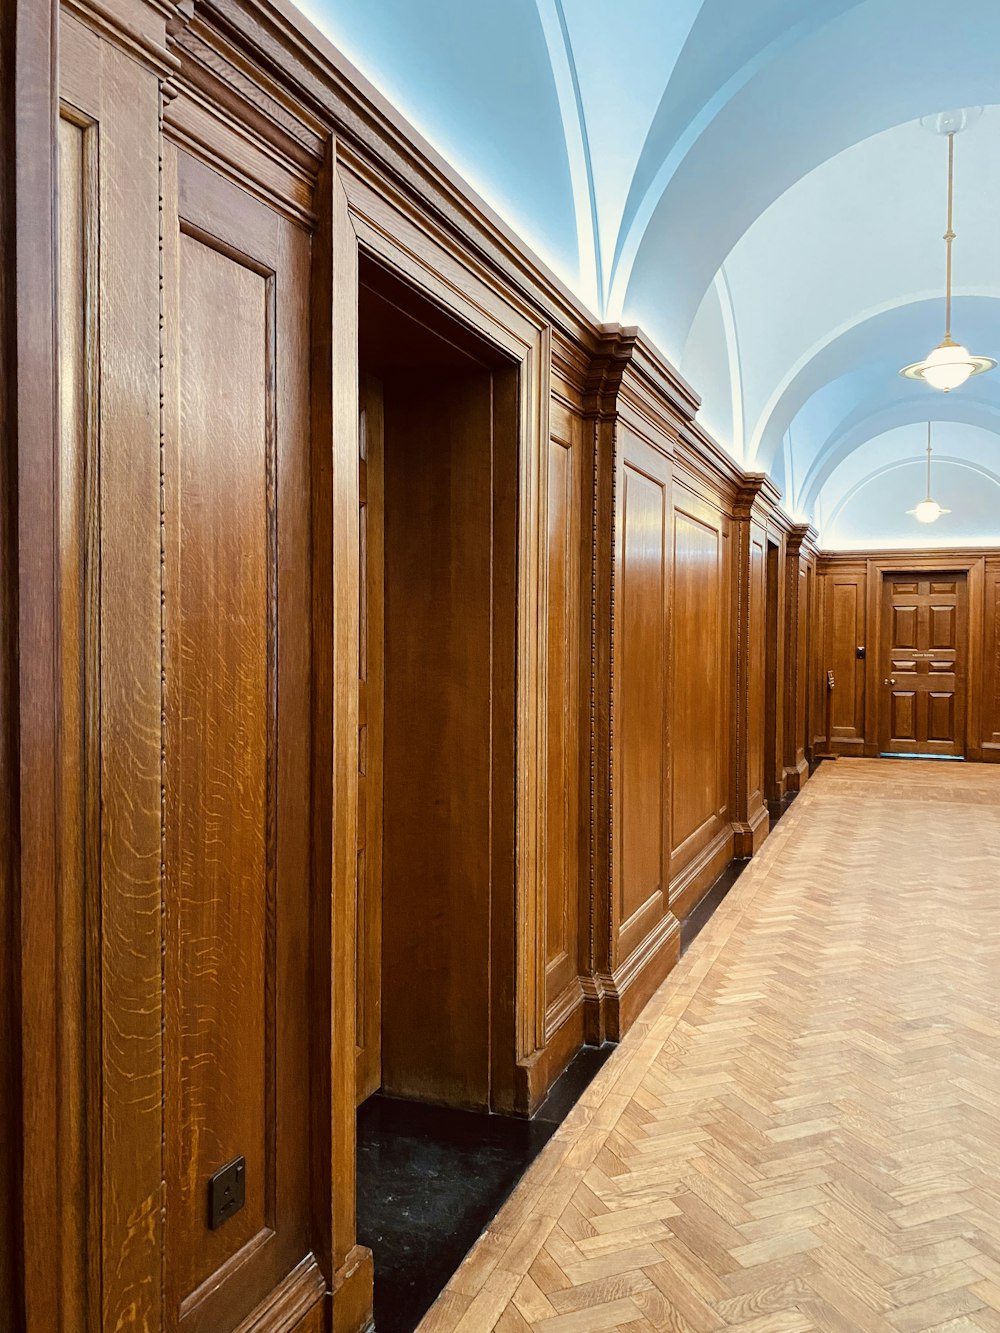 a row of wooden doors in a hallway